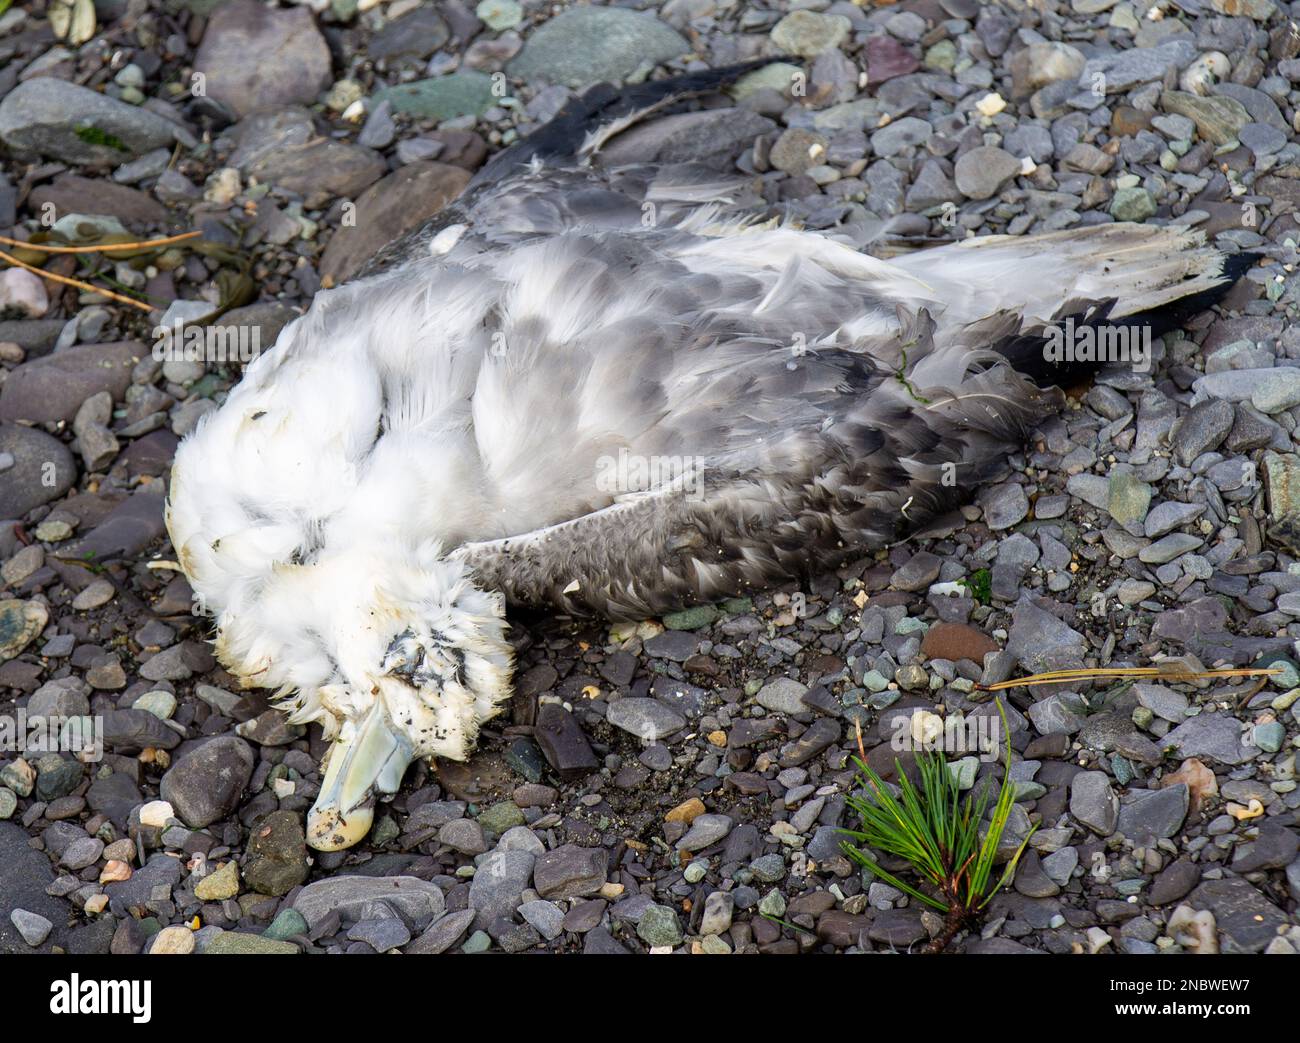 Oiseau marin mort sur la plage Banque D'Images